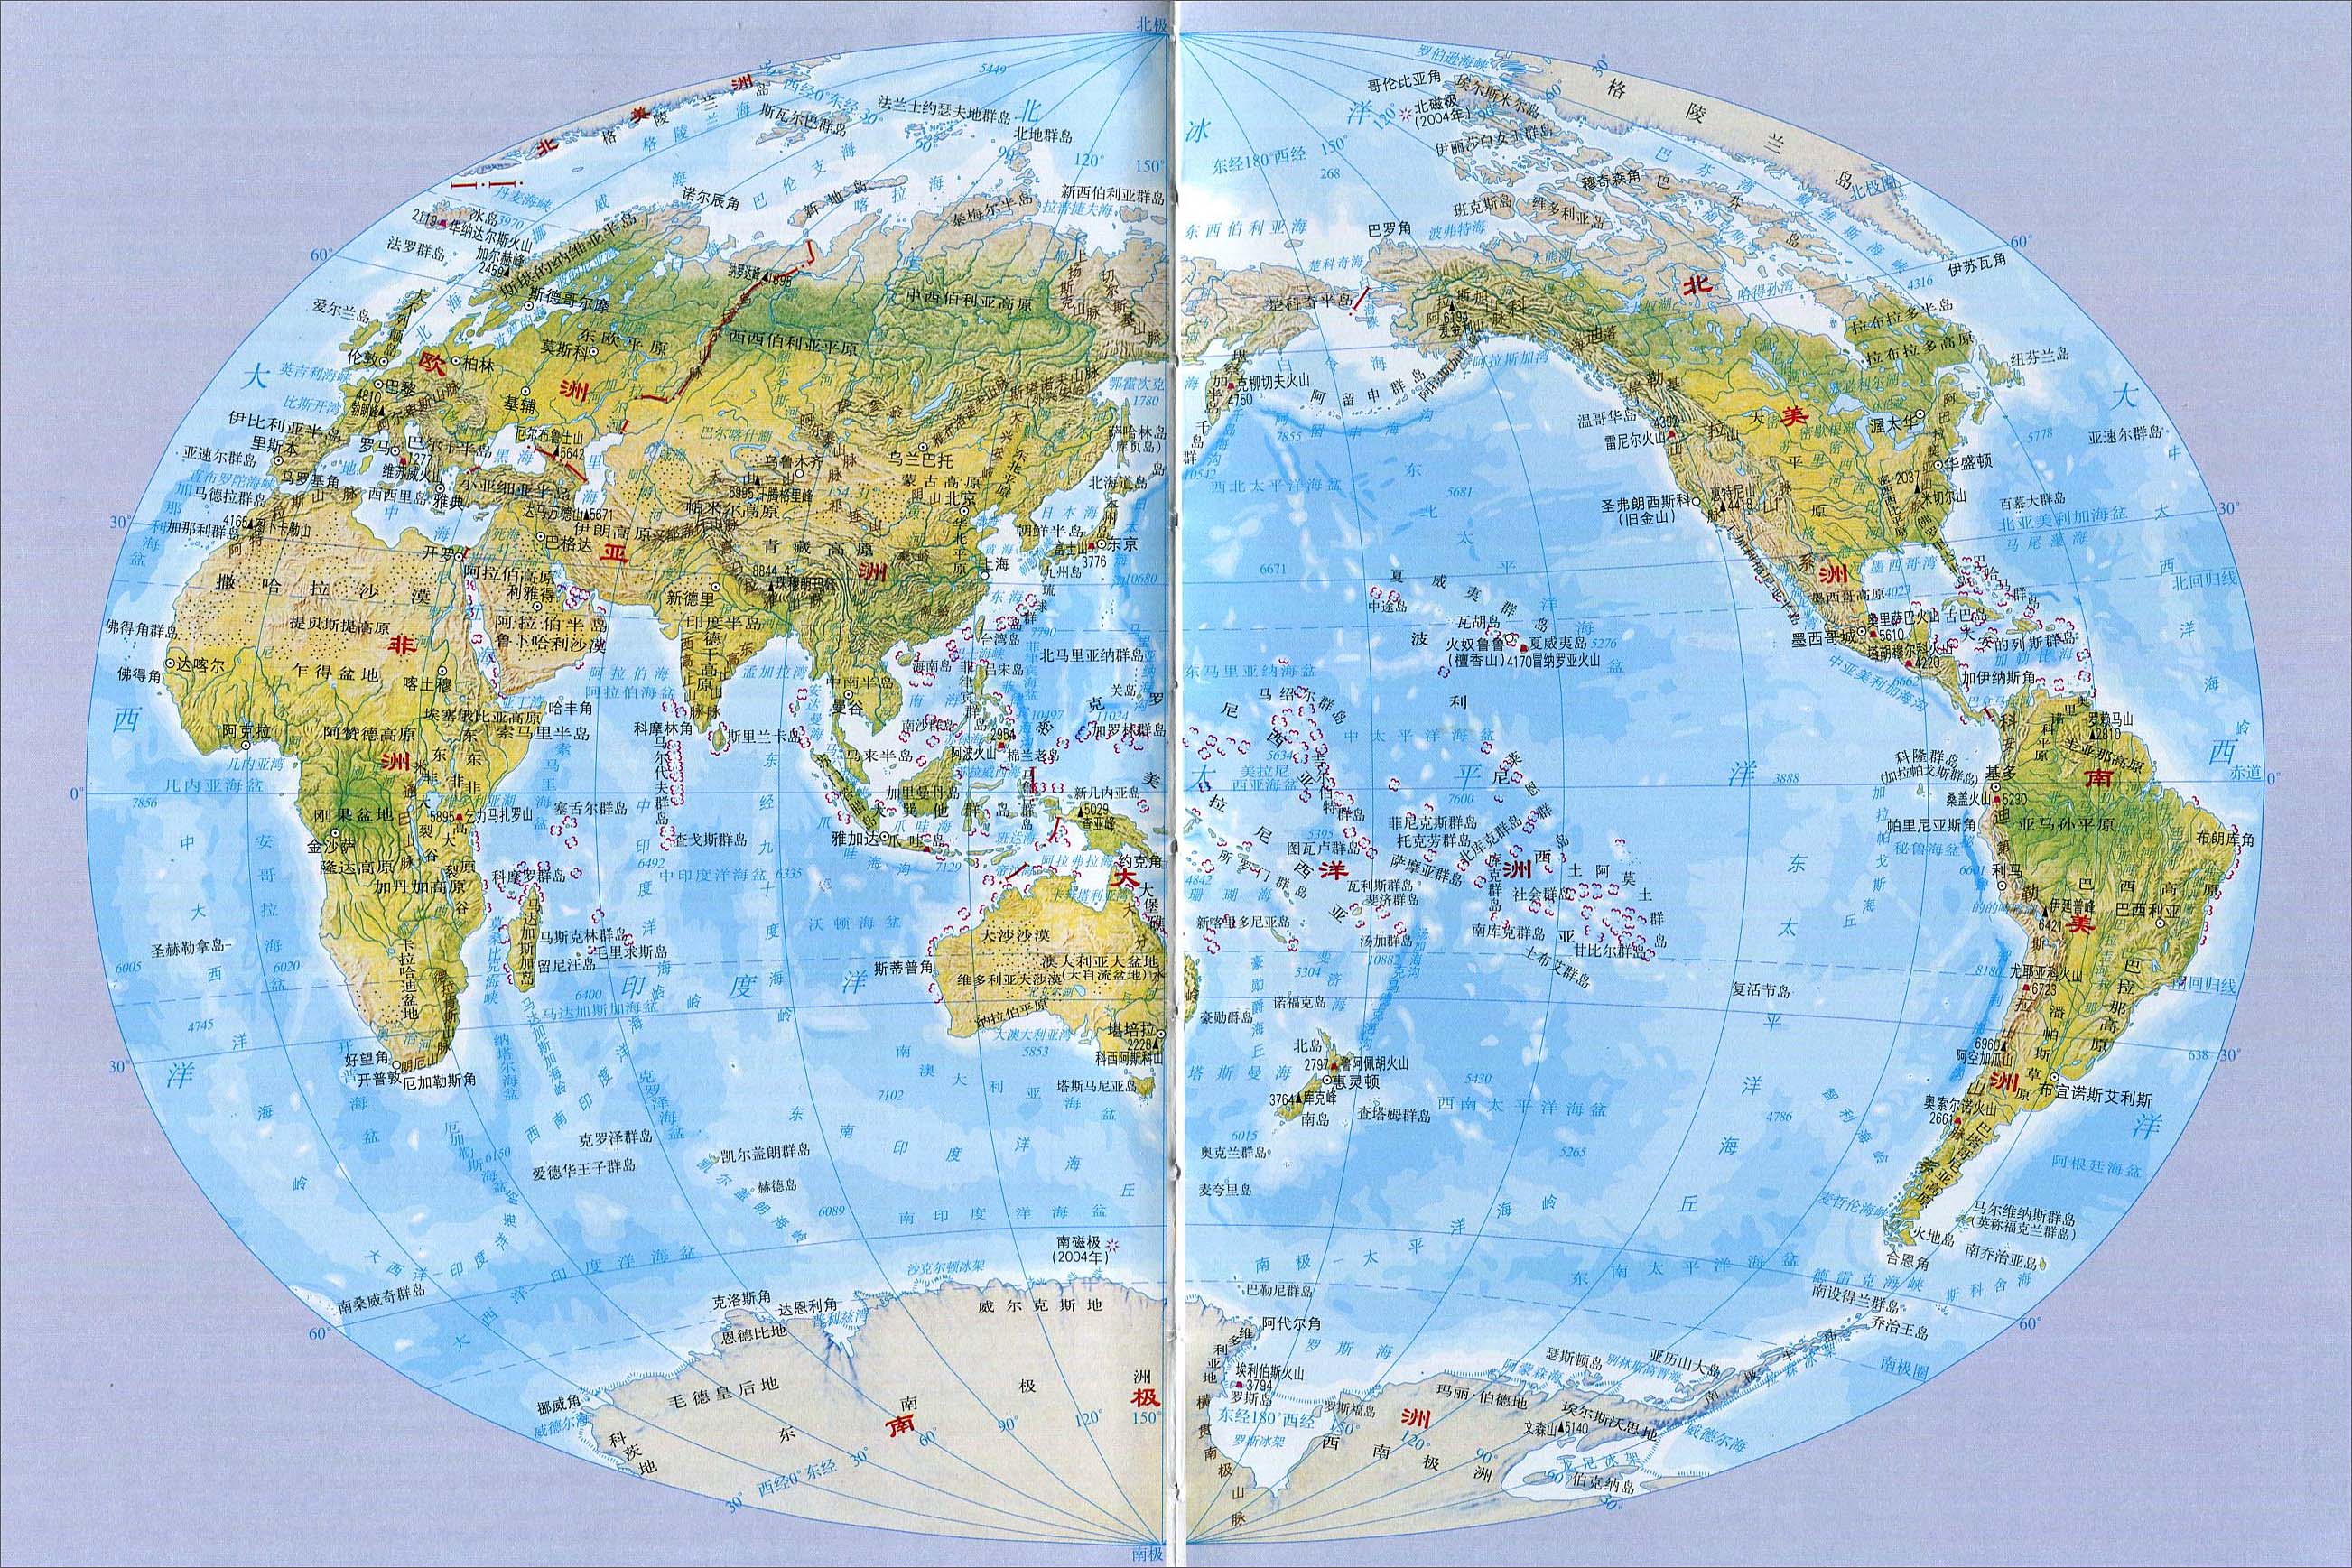 世界航海地图 - 世界地理地图 - 地理教师网